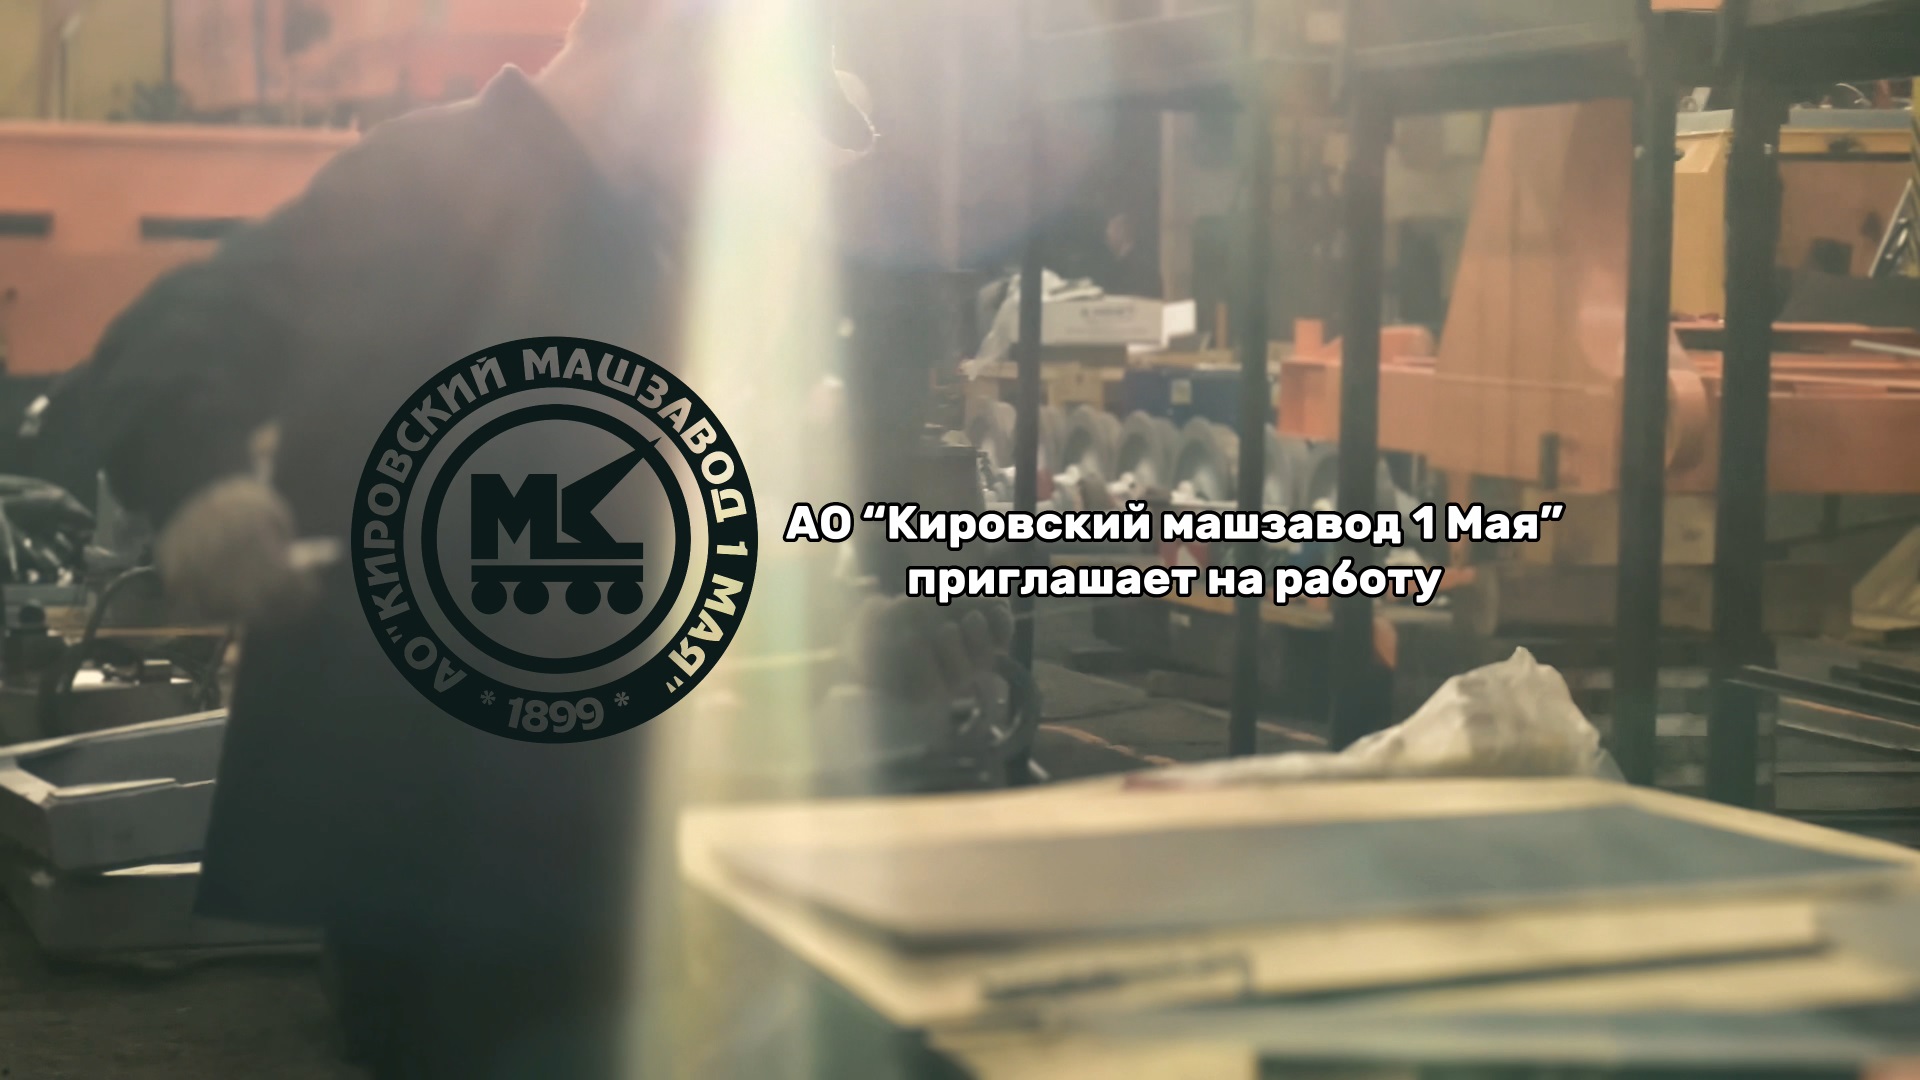 АО «Кировский машзавод 1 Мая» приглашает на работу новых сотрудников!